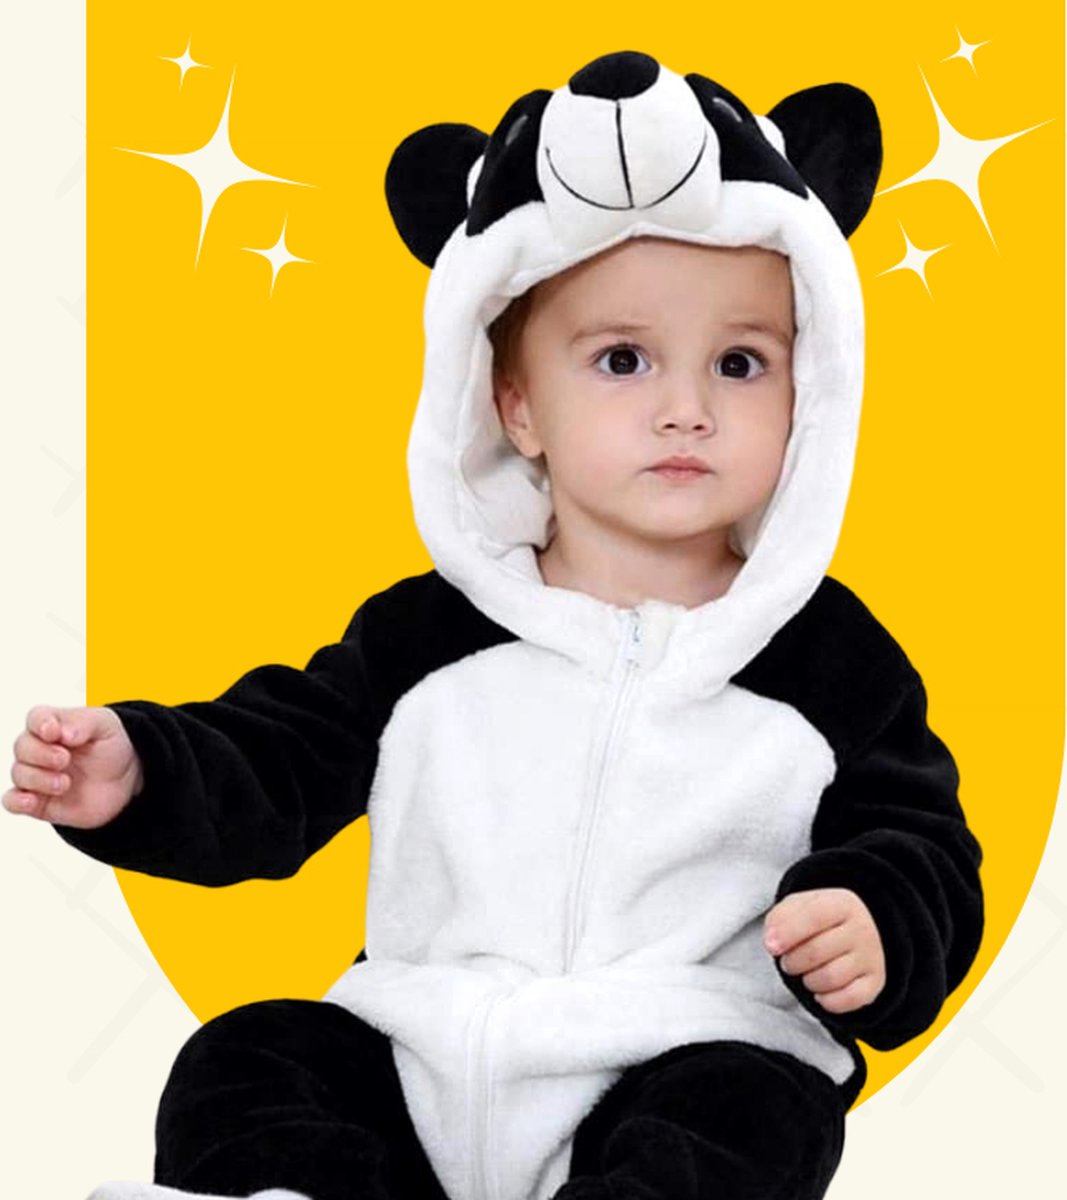 BoefieBoef Baby Onesie Dier Panda S - Kinder Peuter Pyama Onesie - Baby Jumpsuit - Baby Kruippak - Baby Badjas - Verkleedkleding Peuter - Carnaval - Dierenpak - Baby Kostuum - Baby Romper - Baby Kigurumi - 6-18 maanden